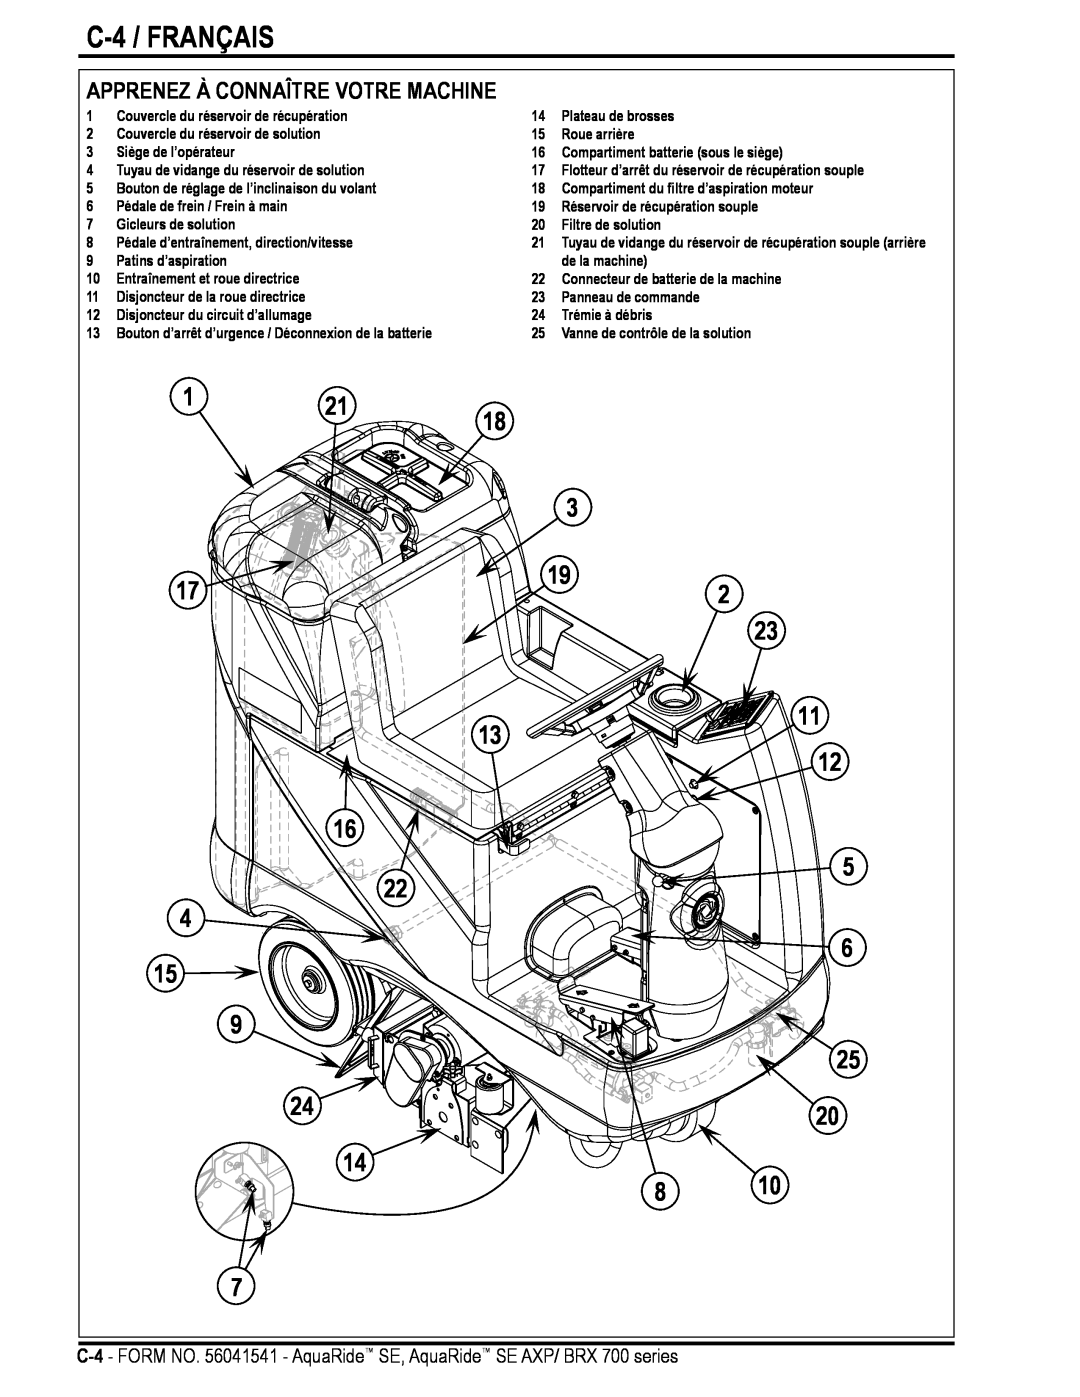 Nilfisk-Advance America BRX 700 Series manual C-4 / FRANÇAIS, 1 21, Apprenez À Connaître Votre Machine 